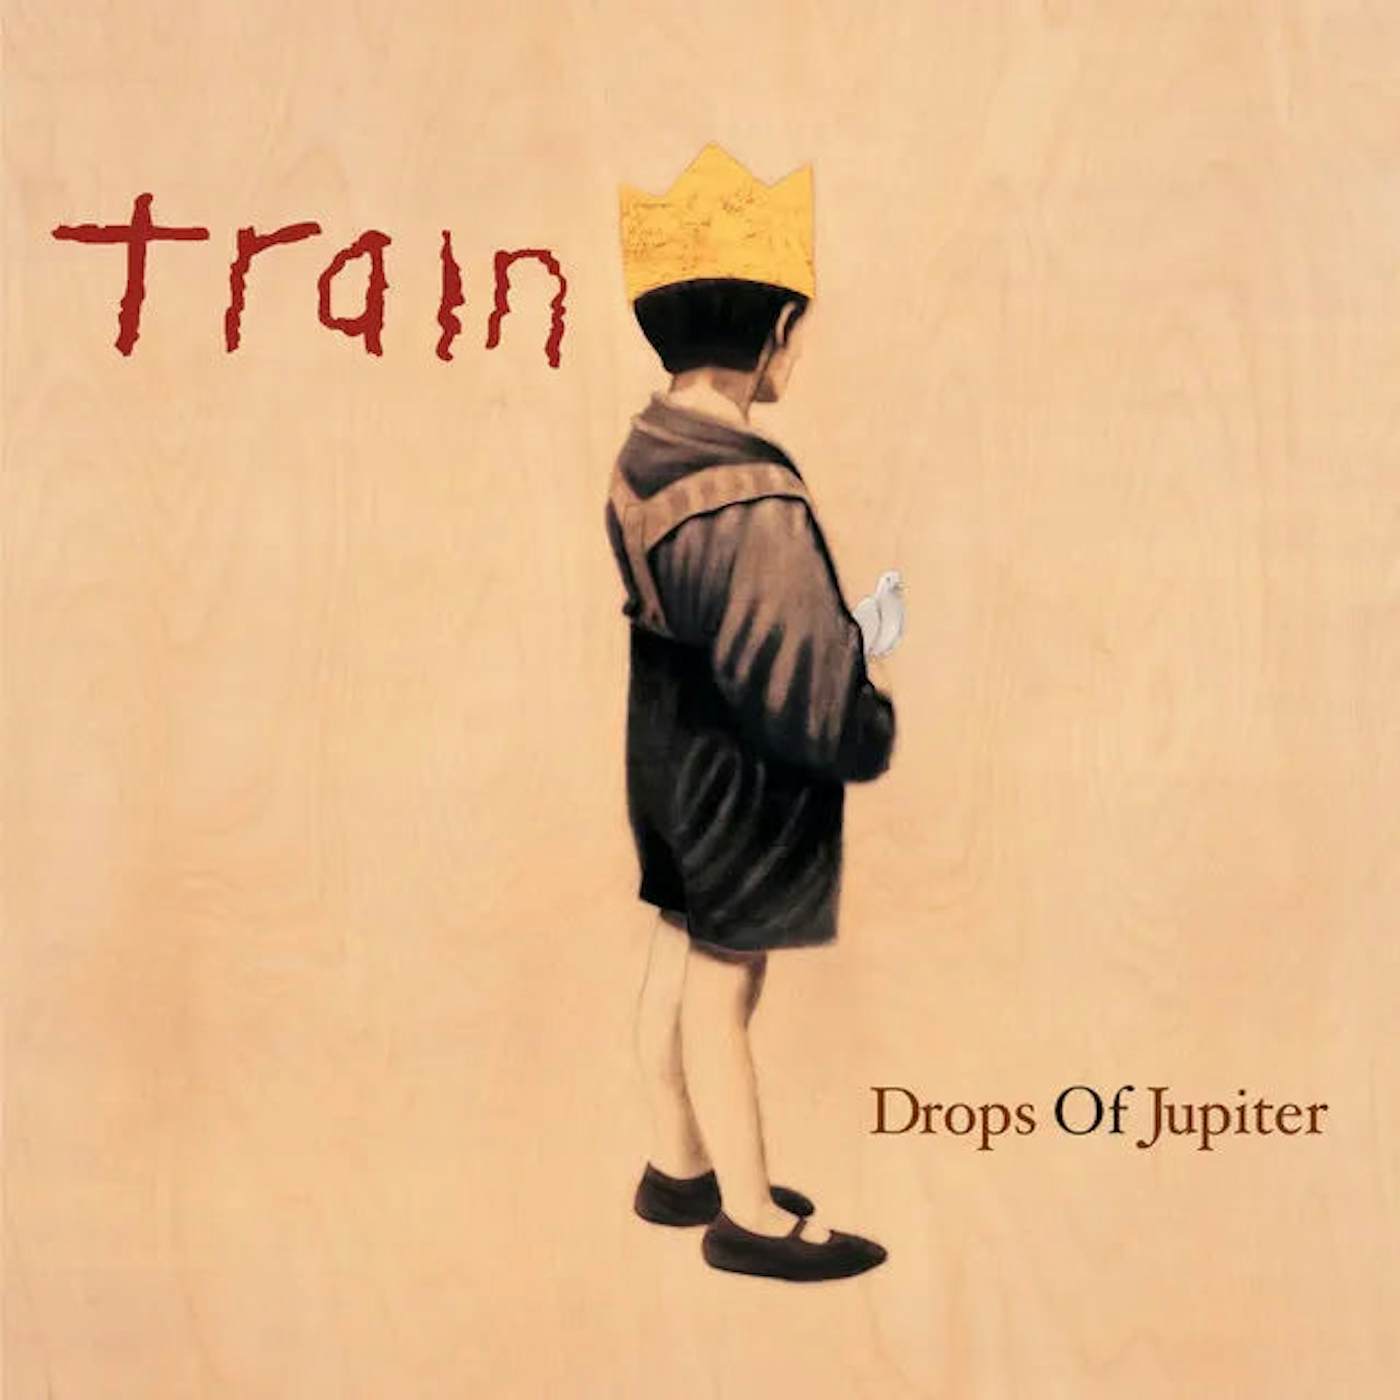 Train - Drops of Jupiter (Vinyl)